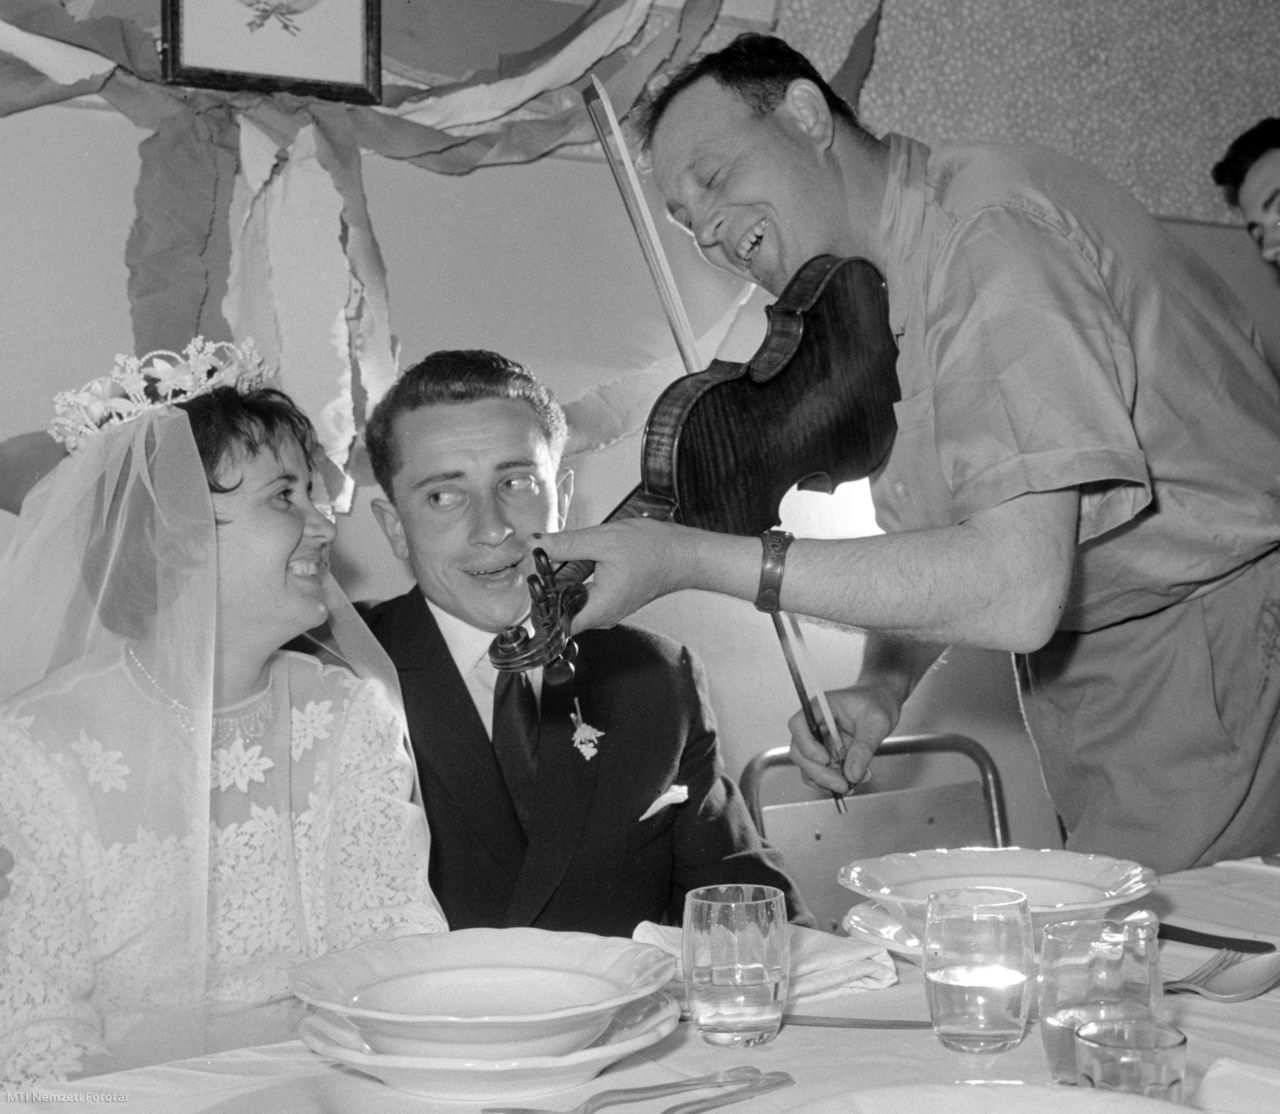 Hódmezővásárhely, 1963. május 6. A hegedűs a menyasszony kedvenc nótáját húzza Rákos Katalin, a Szántó Kovács Tsz (termelőszövetkezet) tejkezelőjének (b) és Arany Bálint, a gépállomás villanyszerelőjének (k) lakodalmán. Mindkét fiatal a "Szocialista brigád" címért versenyző brigád tagja.